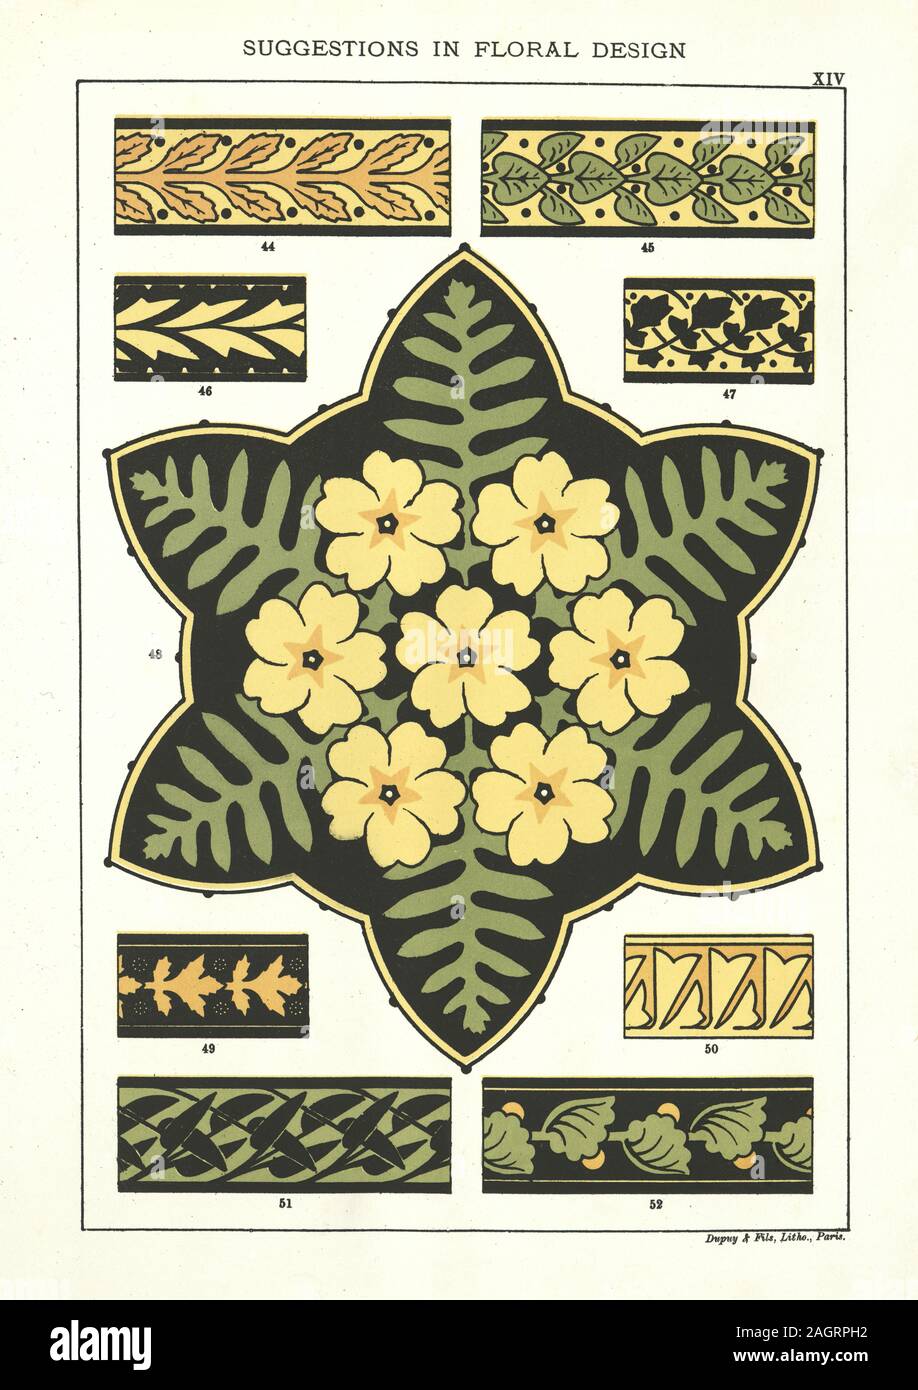 Suggerimenti di stile vittoriano nel design floreale, secolo XIX Foto Stock